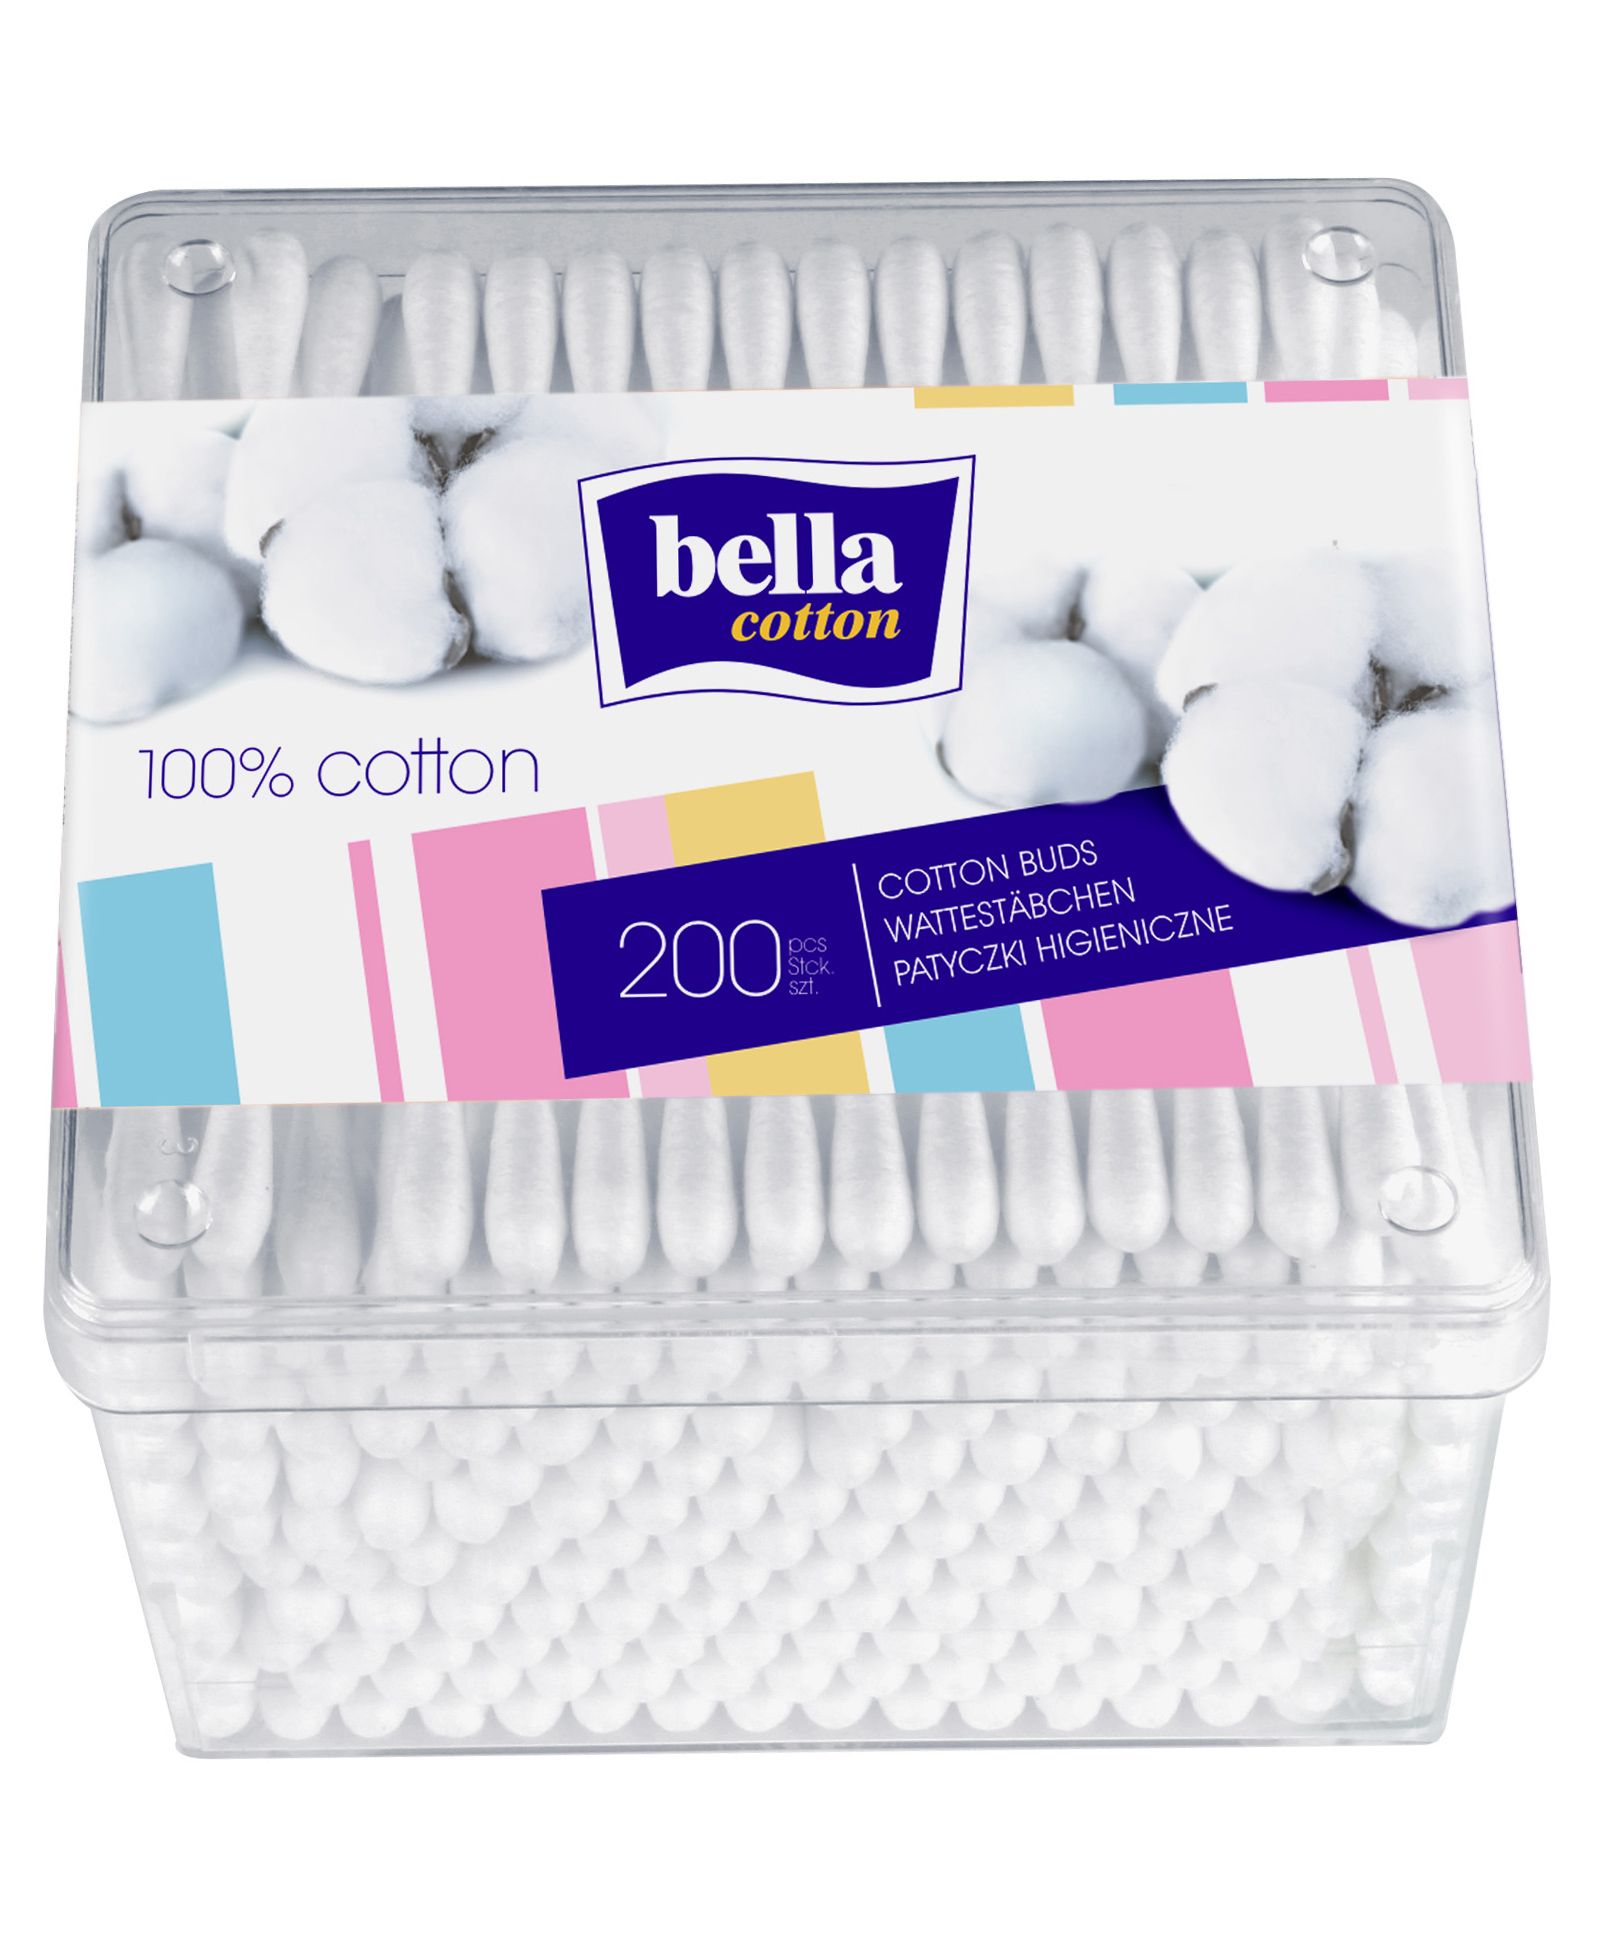 Bella Cotton - Cotton Buds